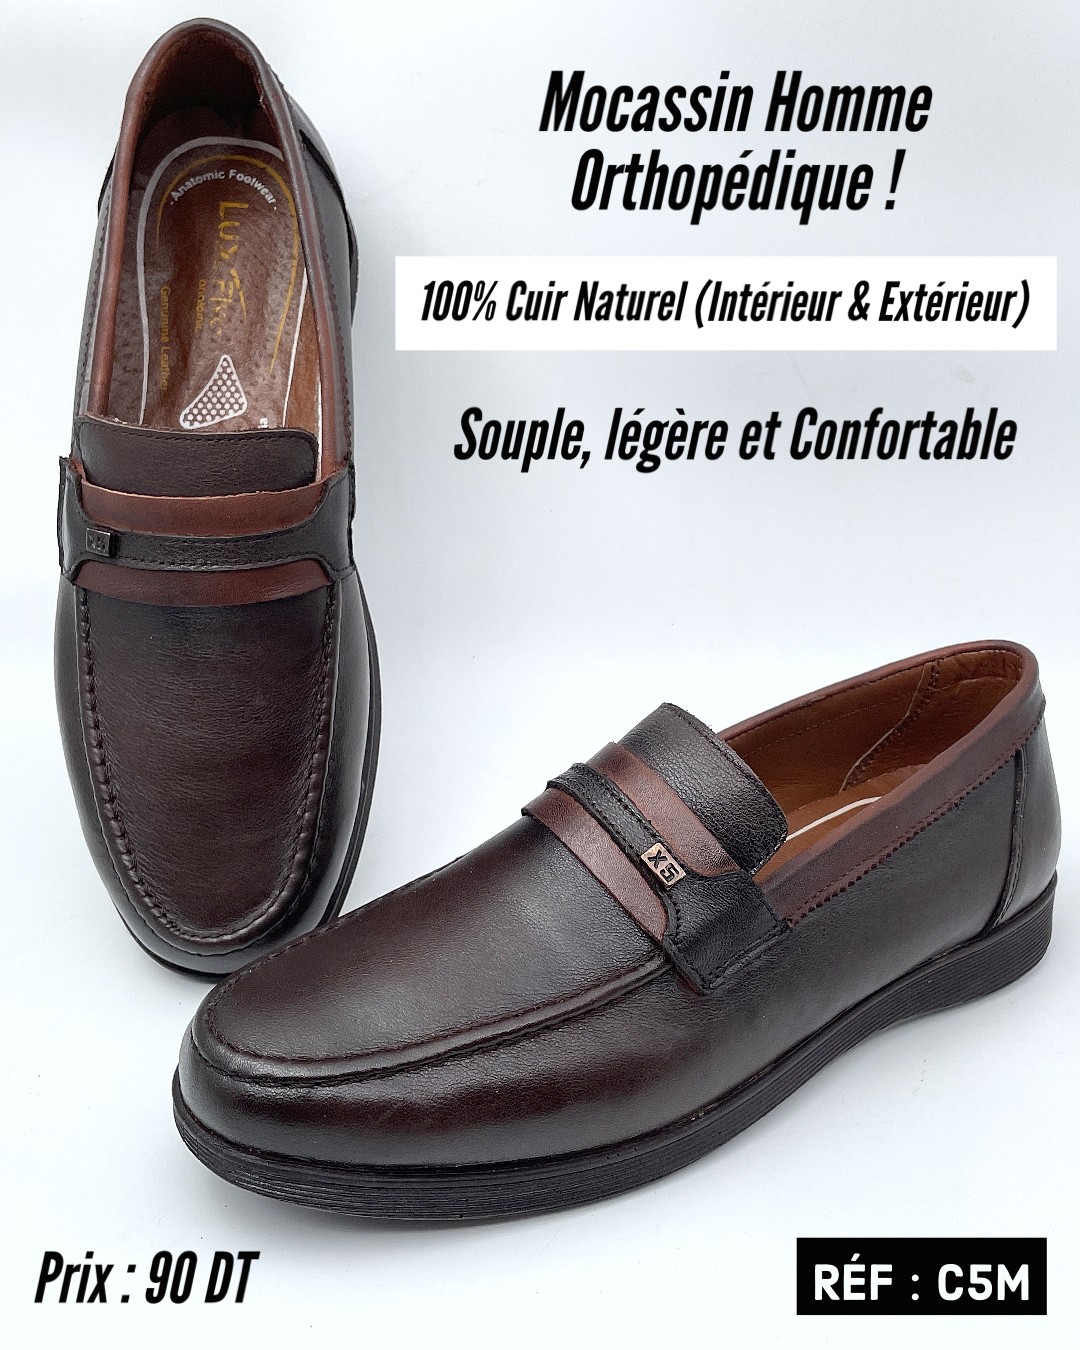 Luxmark.tn - 😎 Chaussures orthopédiques en cuir véritable (100